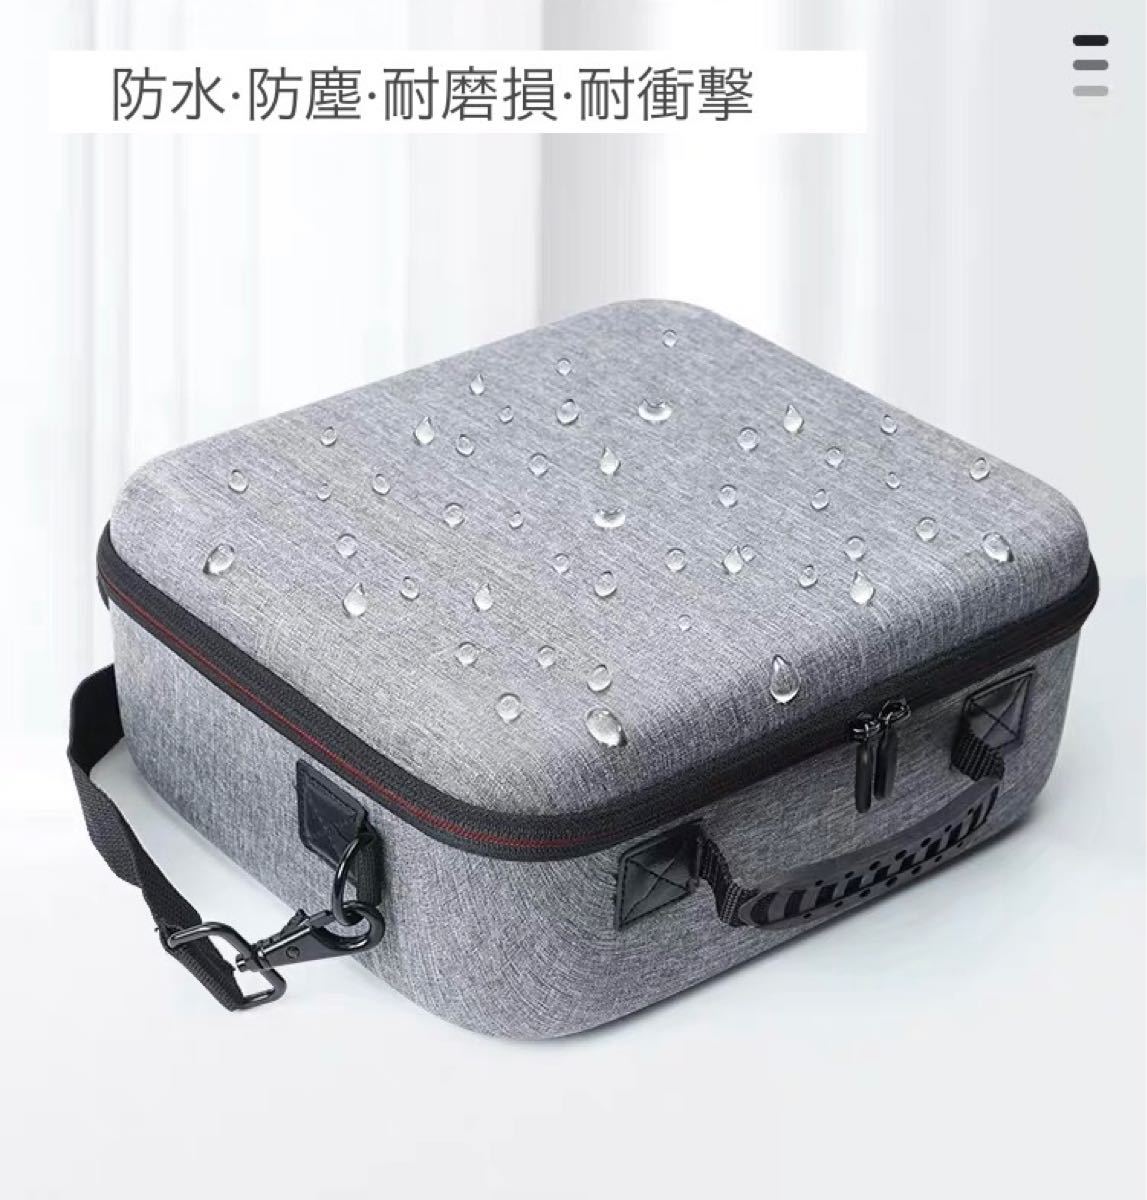 【新商品】スイッチ ケース 収納バッグ オールインワン バッグ 大容量